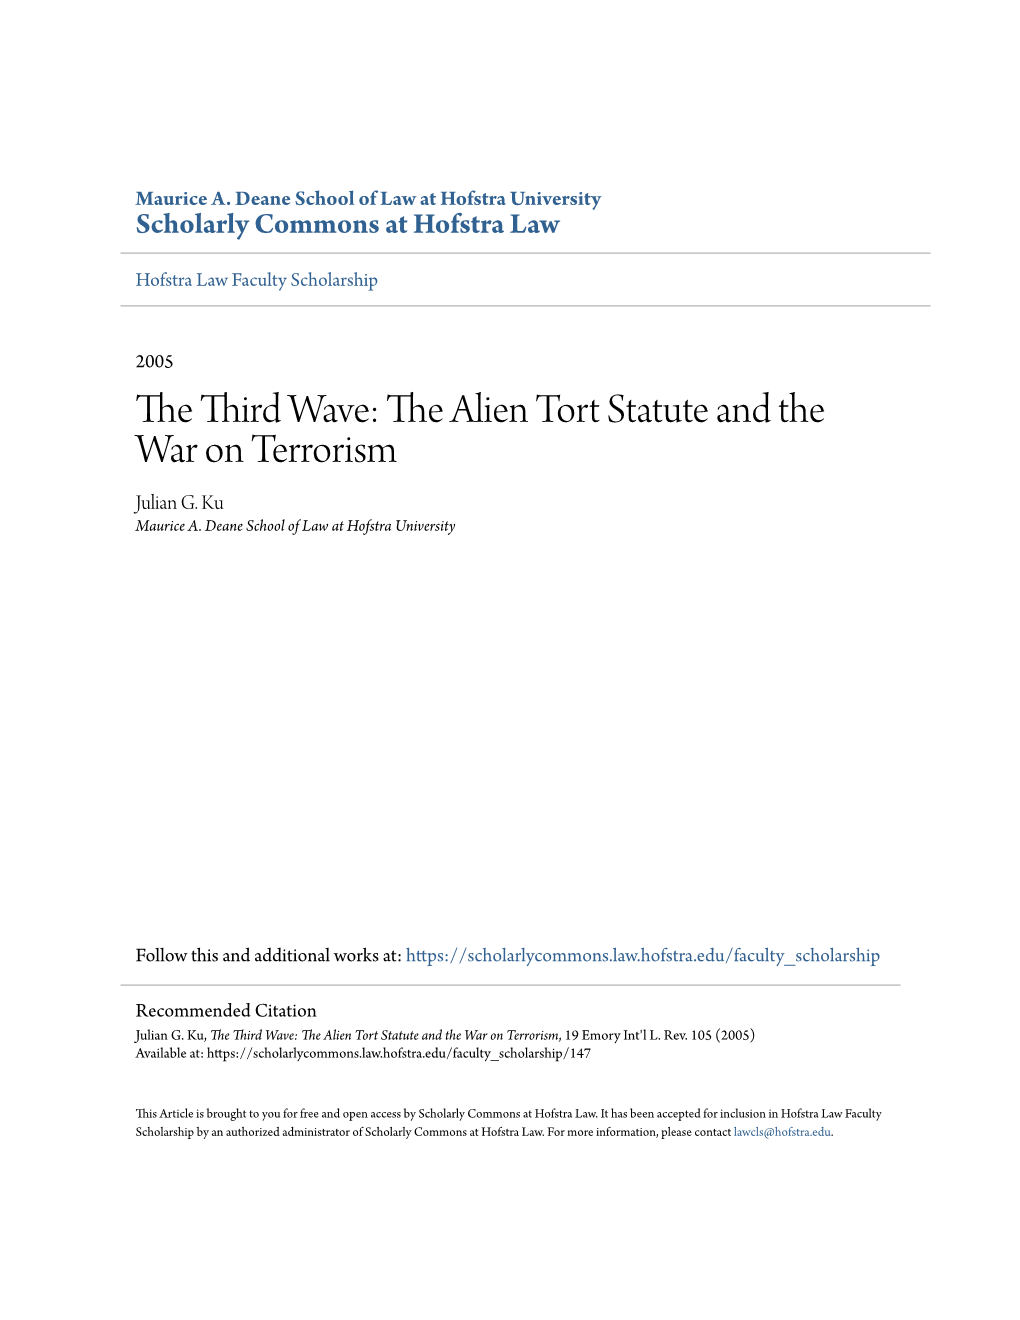 The Alien Tort Statute and the War on Terrorism Julian G